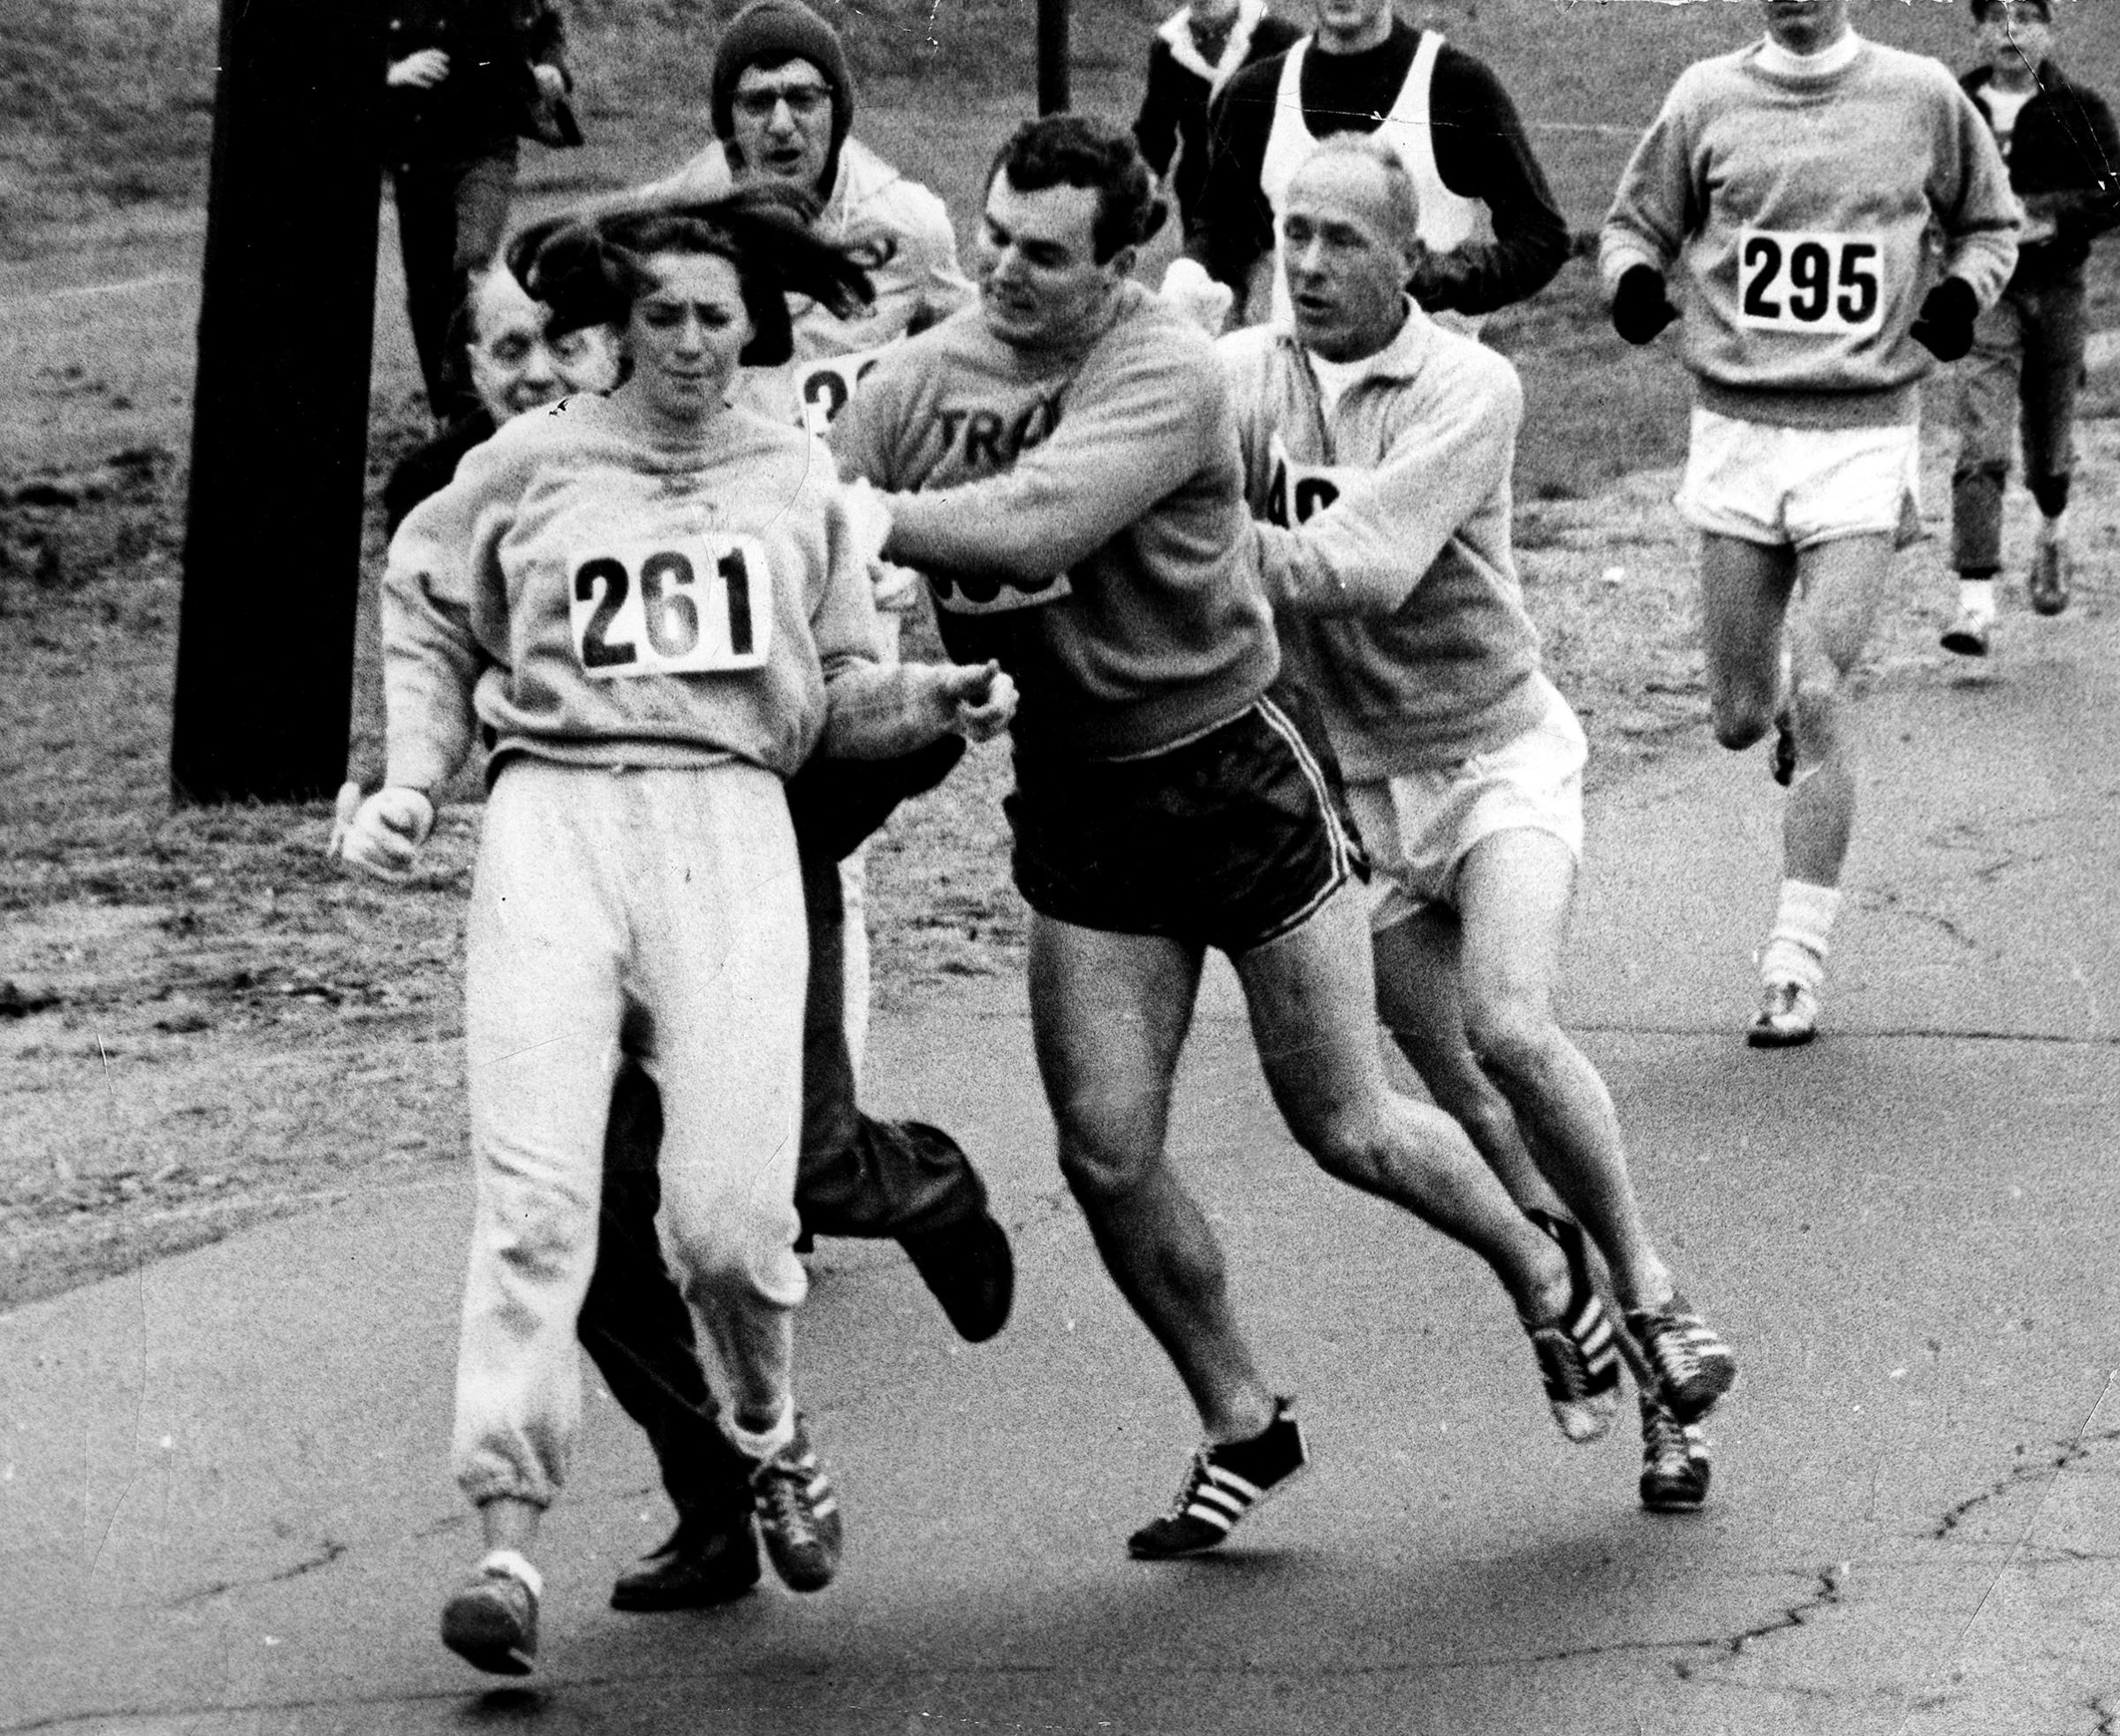 KATHY SWITZER: First woman to run the Boston marathon, 1967.